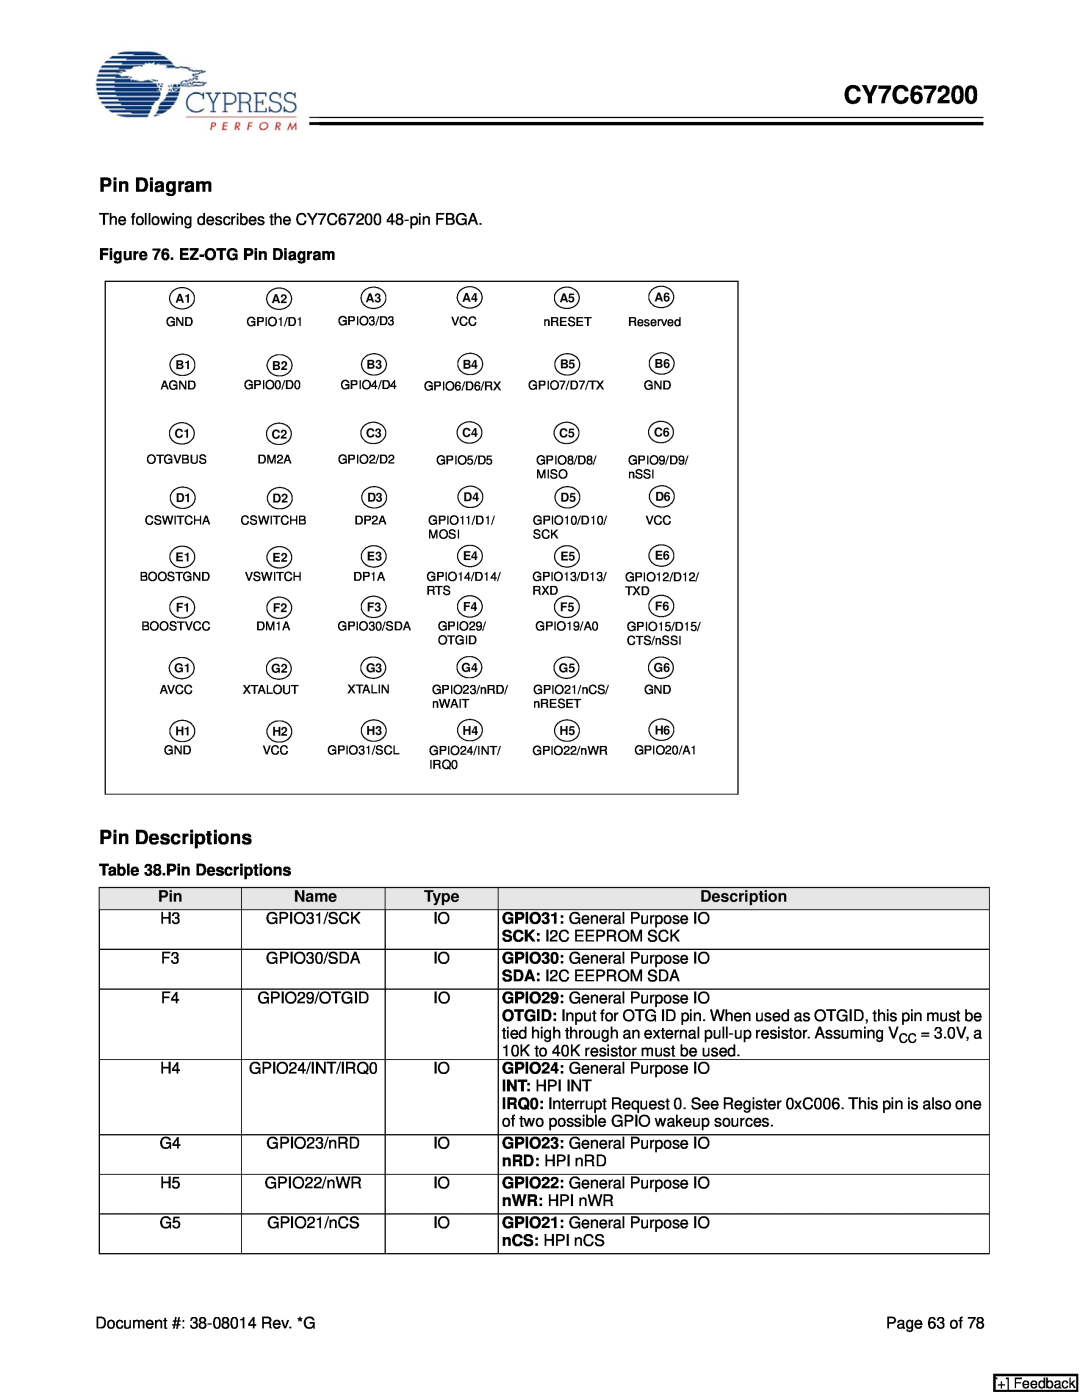 Cypress CY7C67200 manual Pin Diagram, Pin Descriptions 